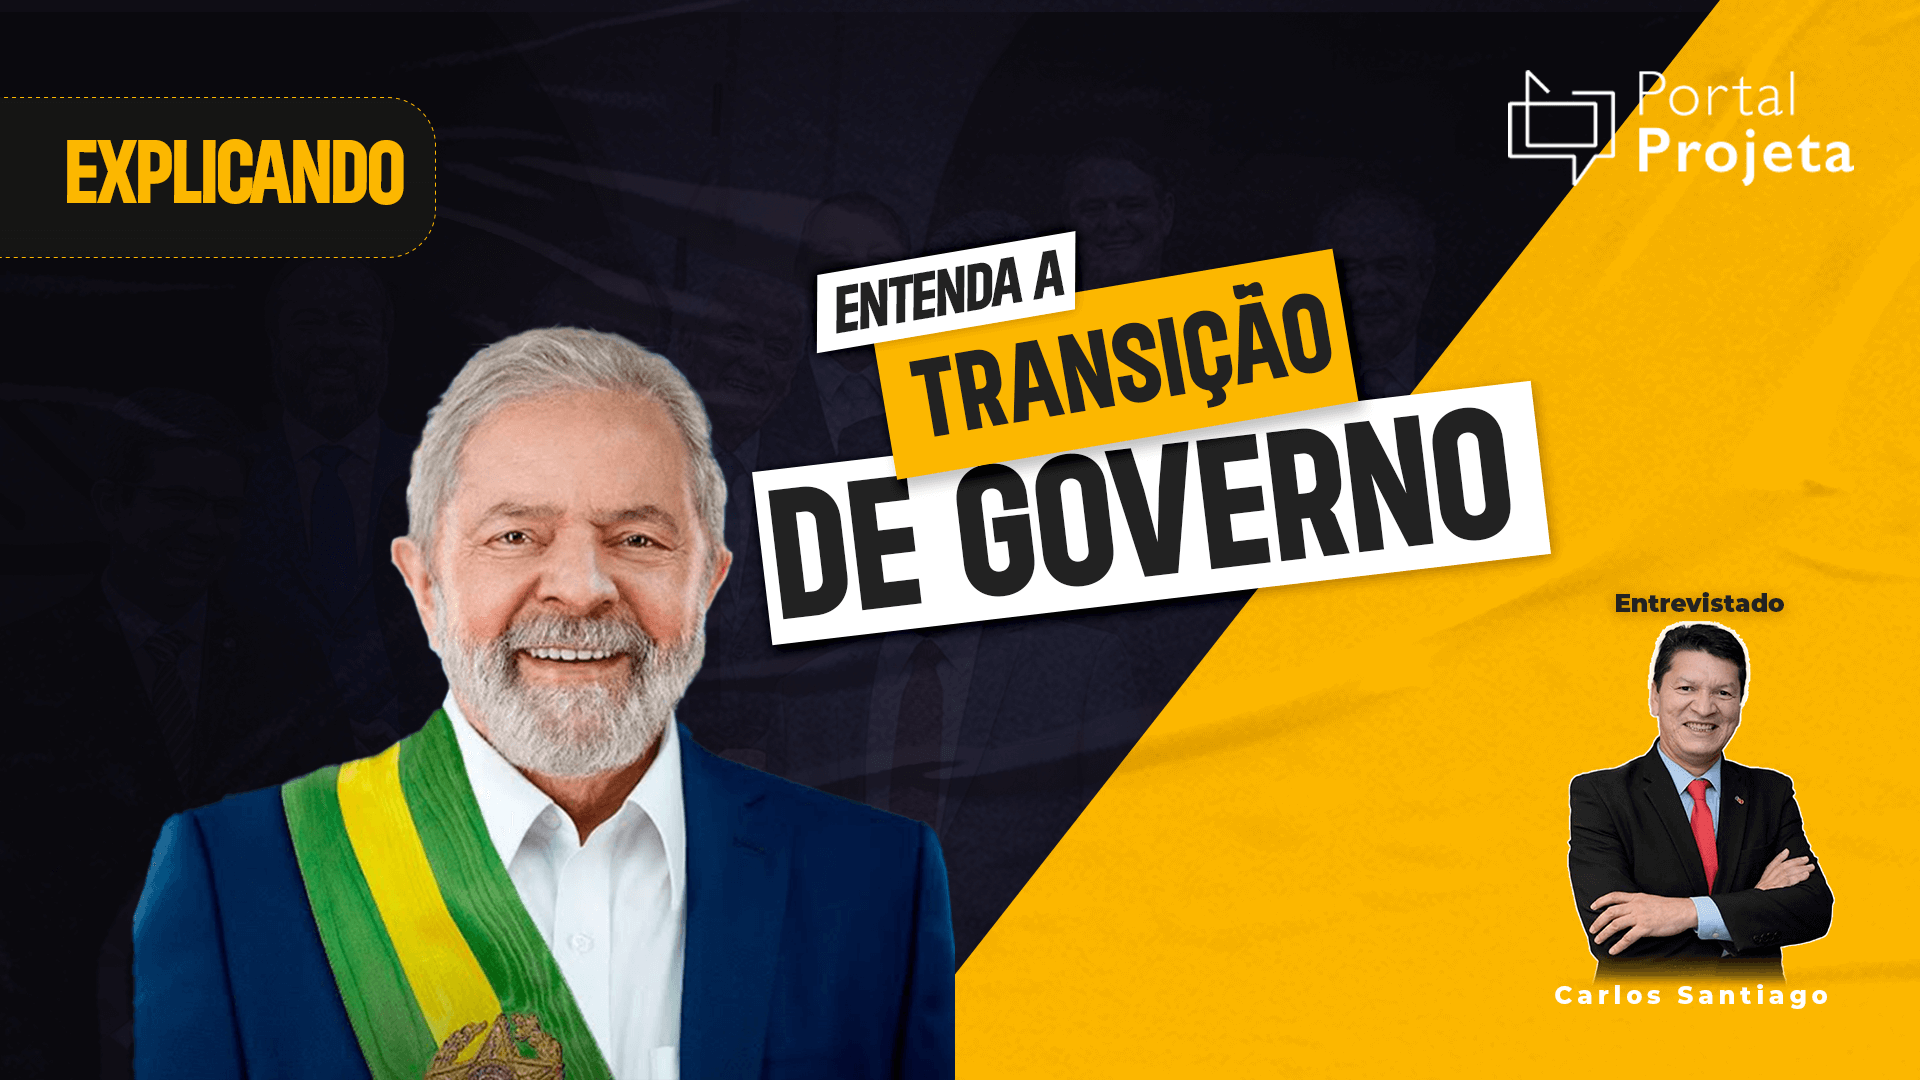 Imagem mostra Luiz Inácio Lula da Silva (PT), presidente eleito, em destaque e texto ao fundo diz: Entenda a transição de Governo